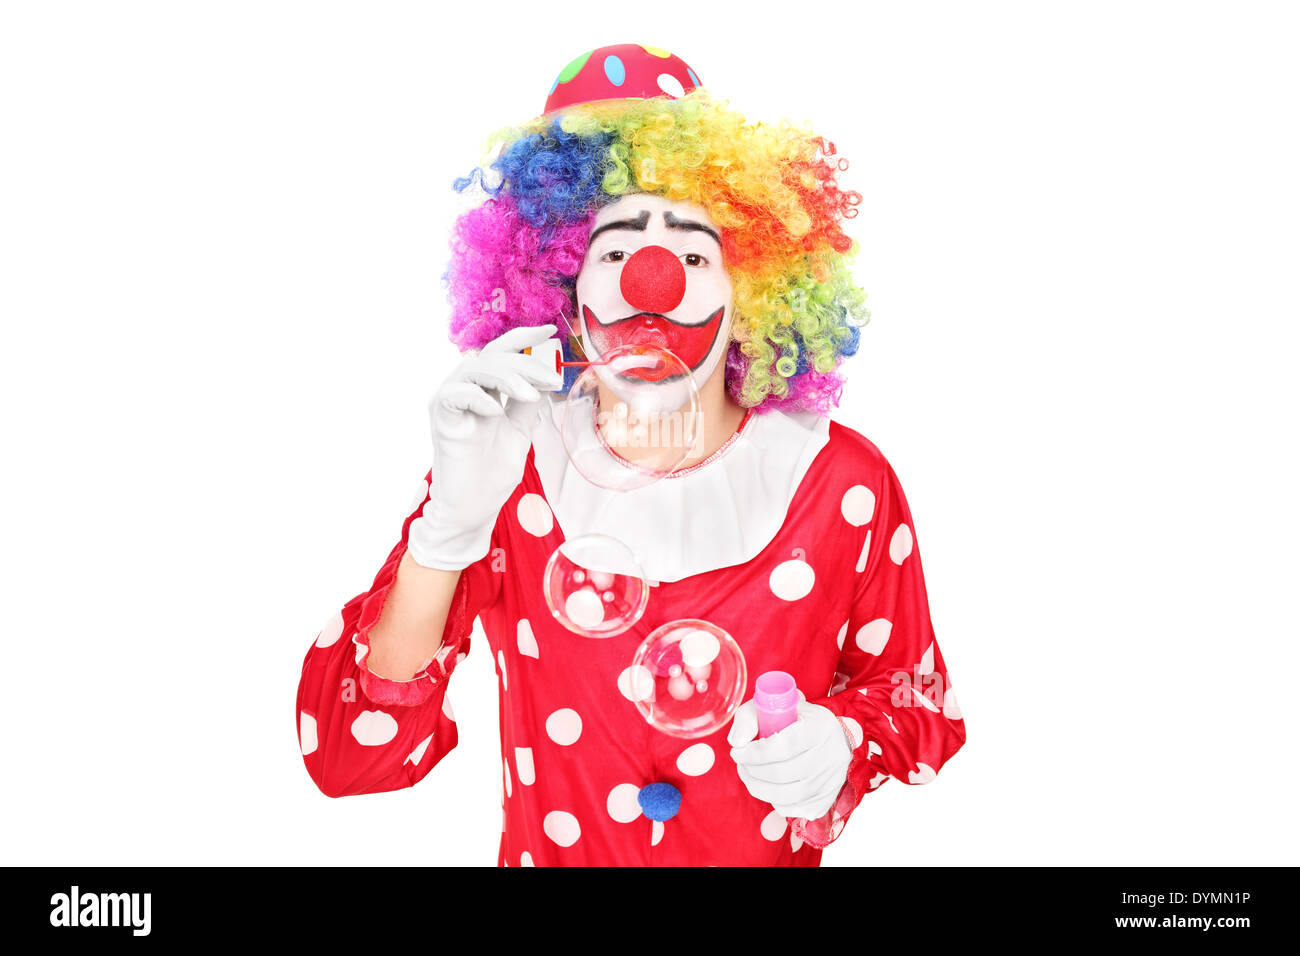 Funny clown blowing bubbles Banque D'Images